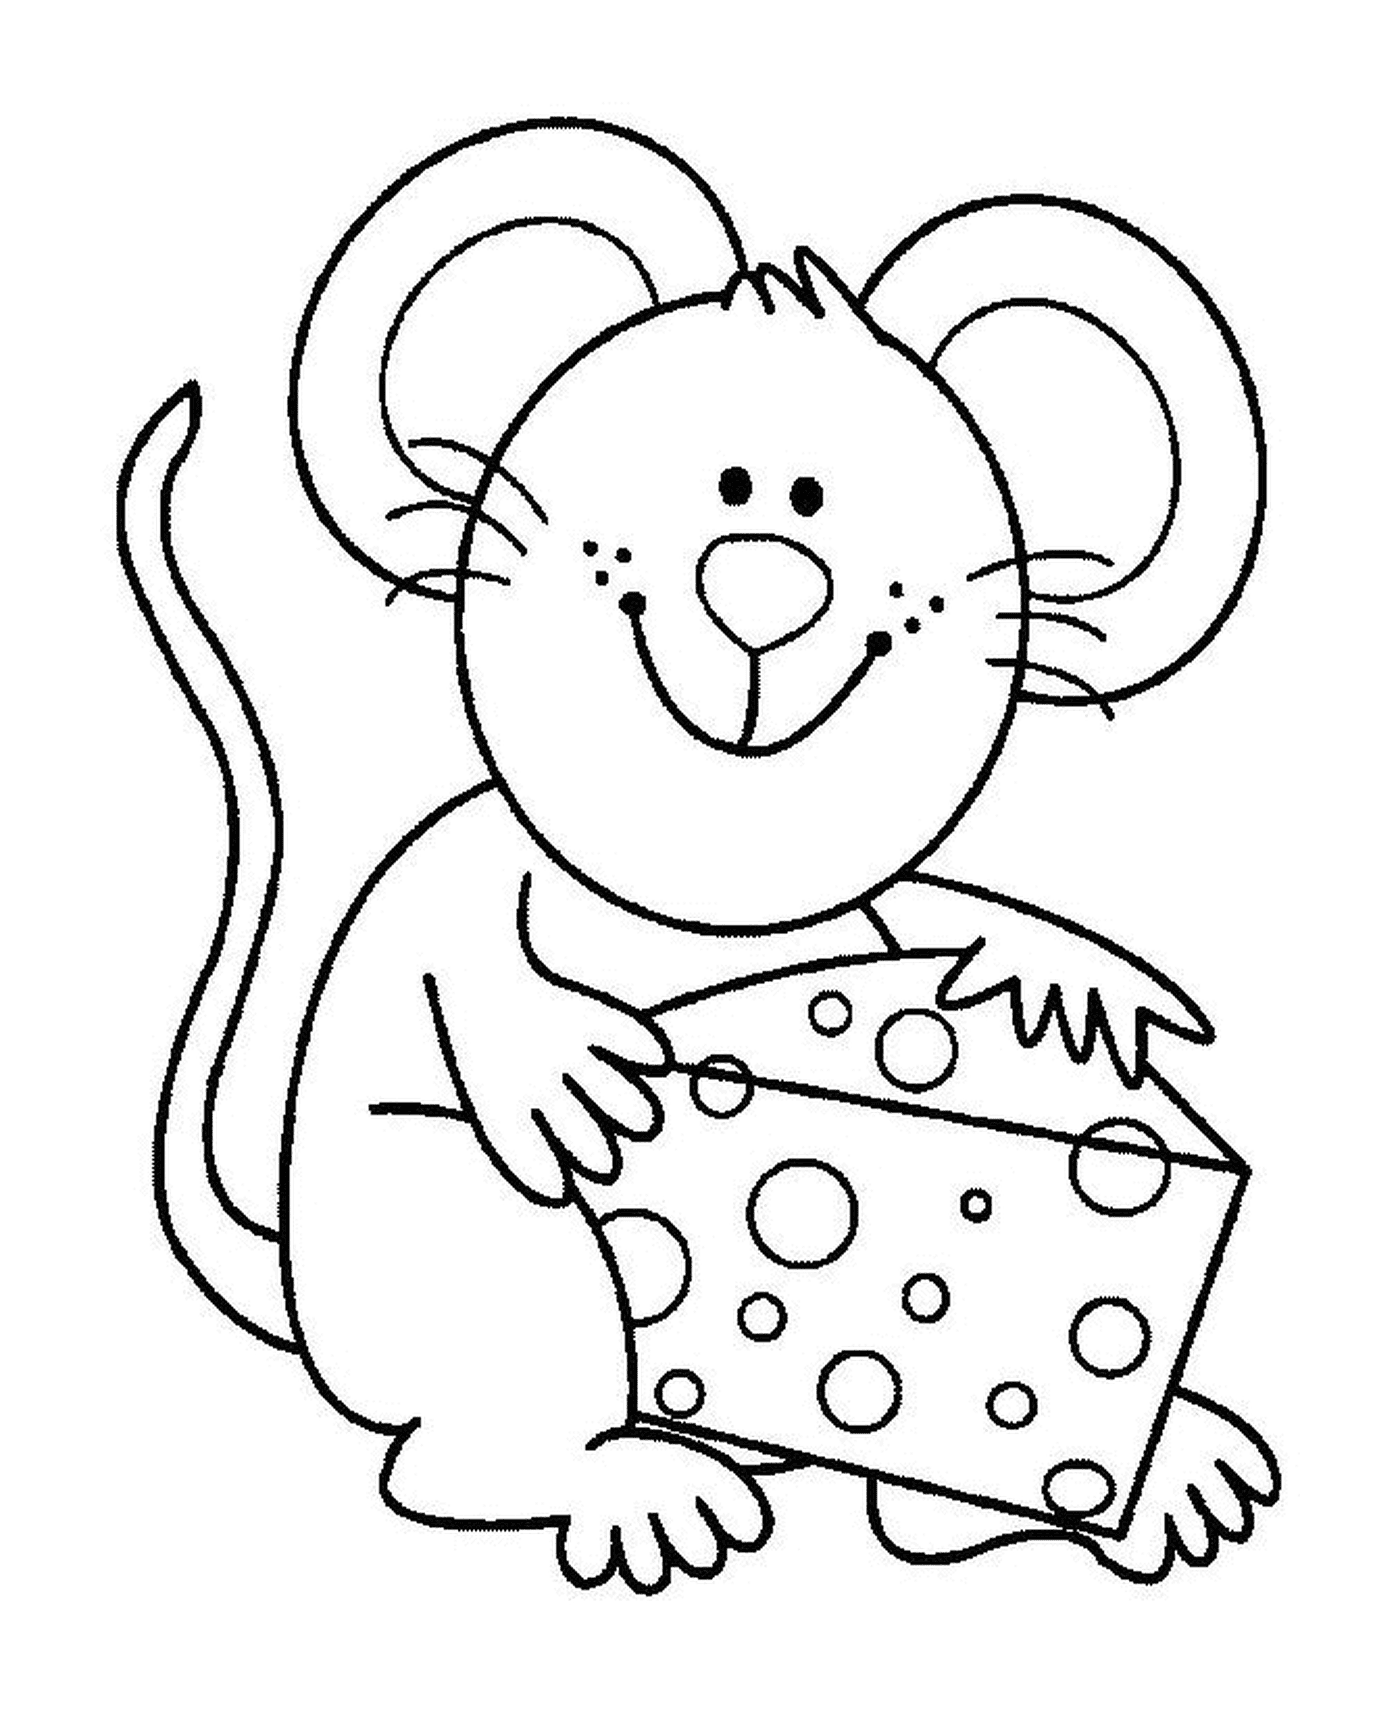  一只有好奶酪的老鼠 